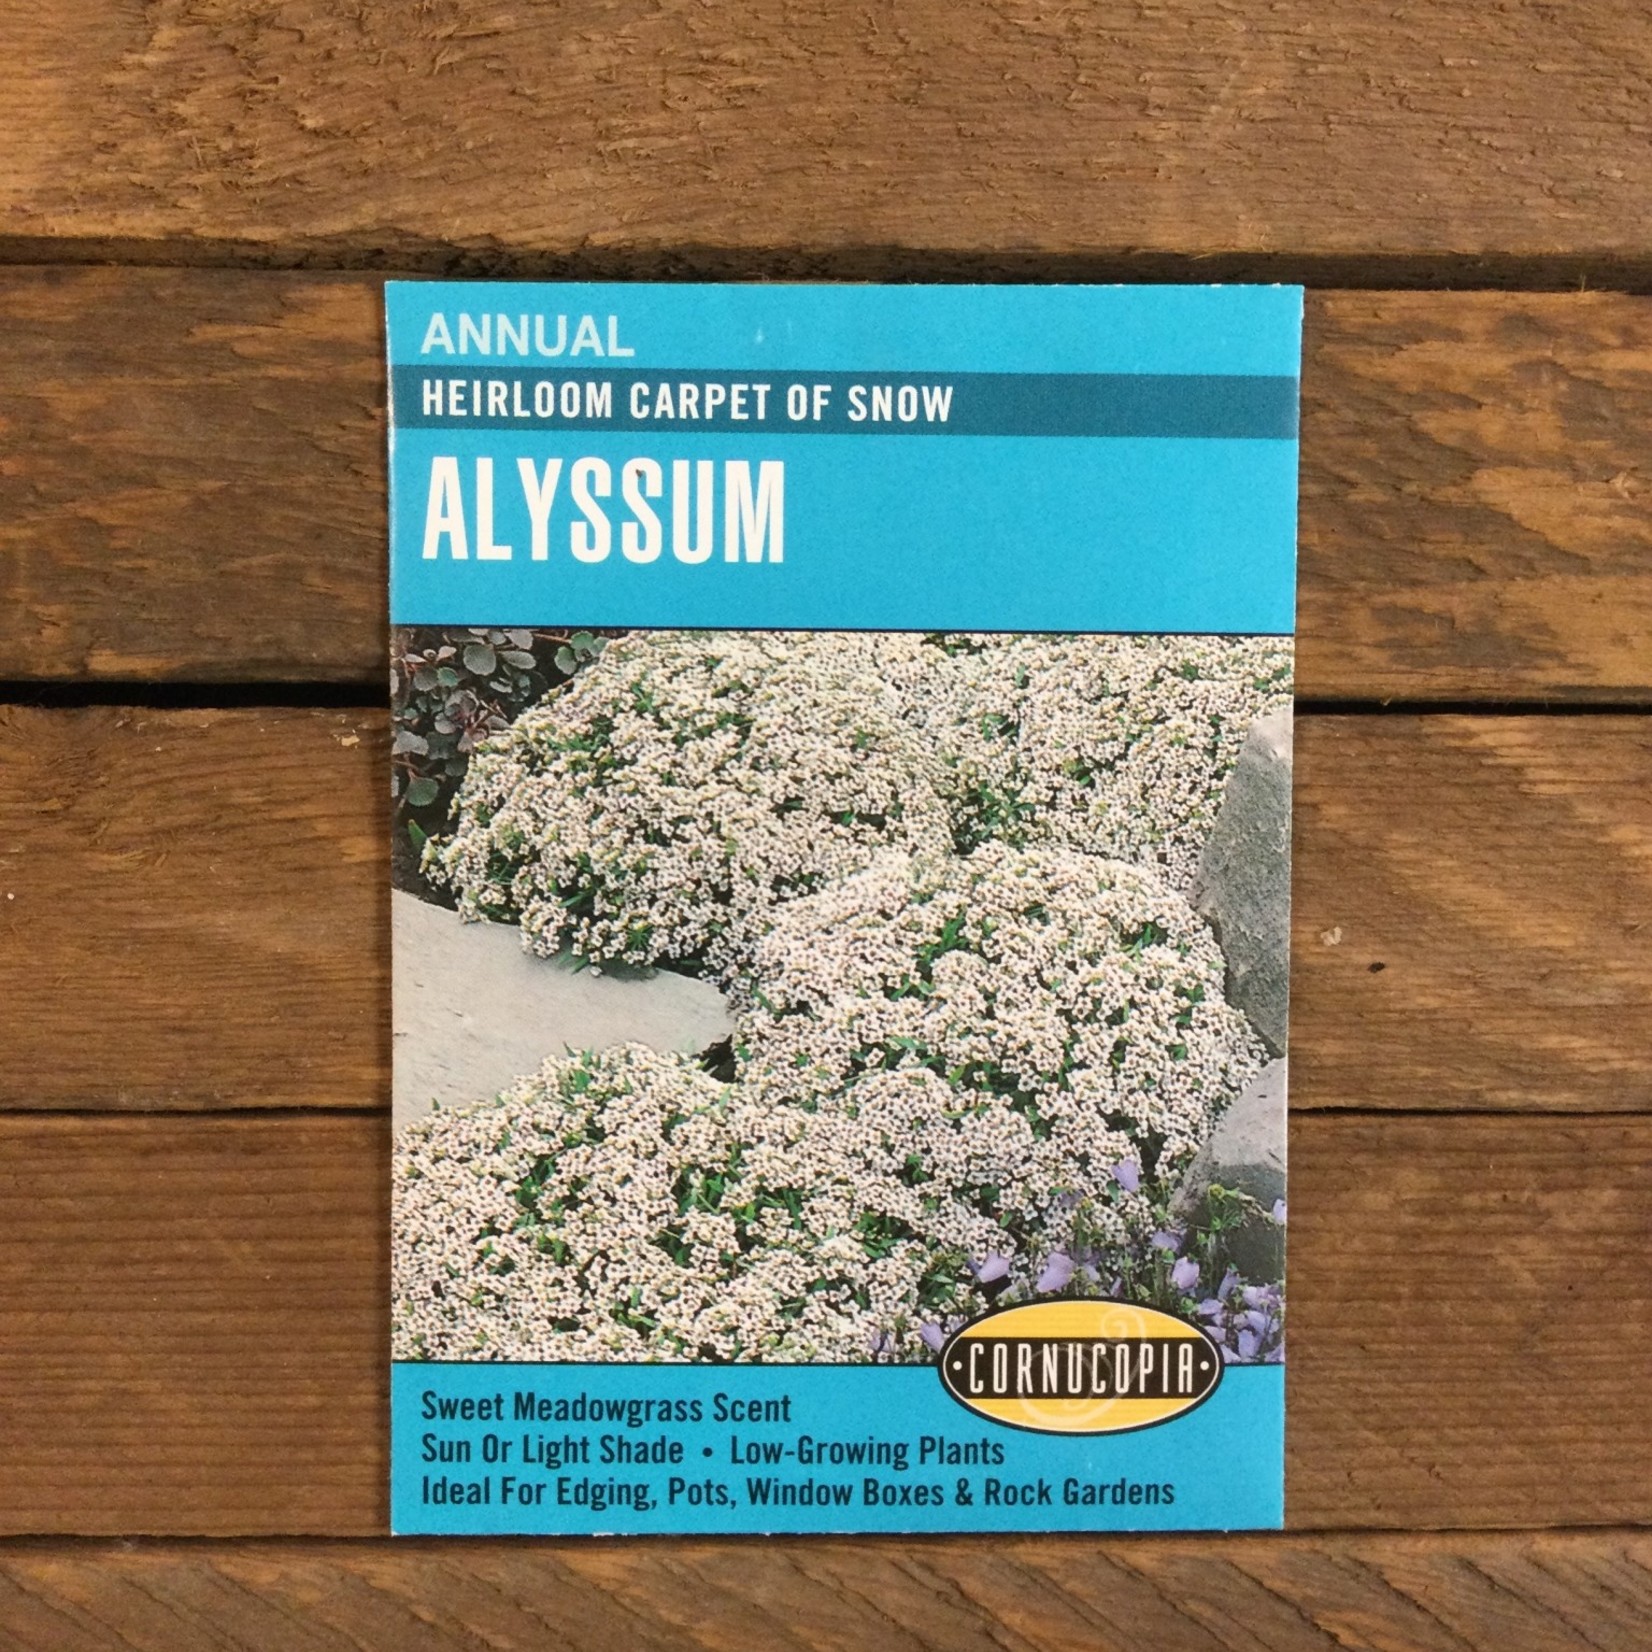 Cornucopia Alyssum - Alyssum Carpet of Snow